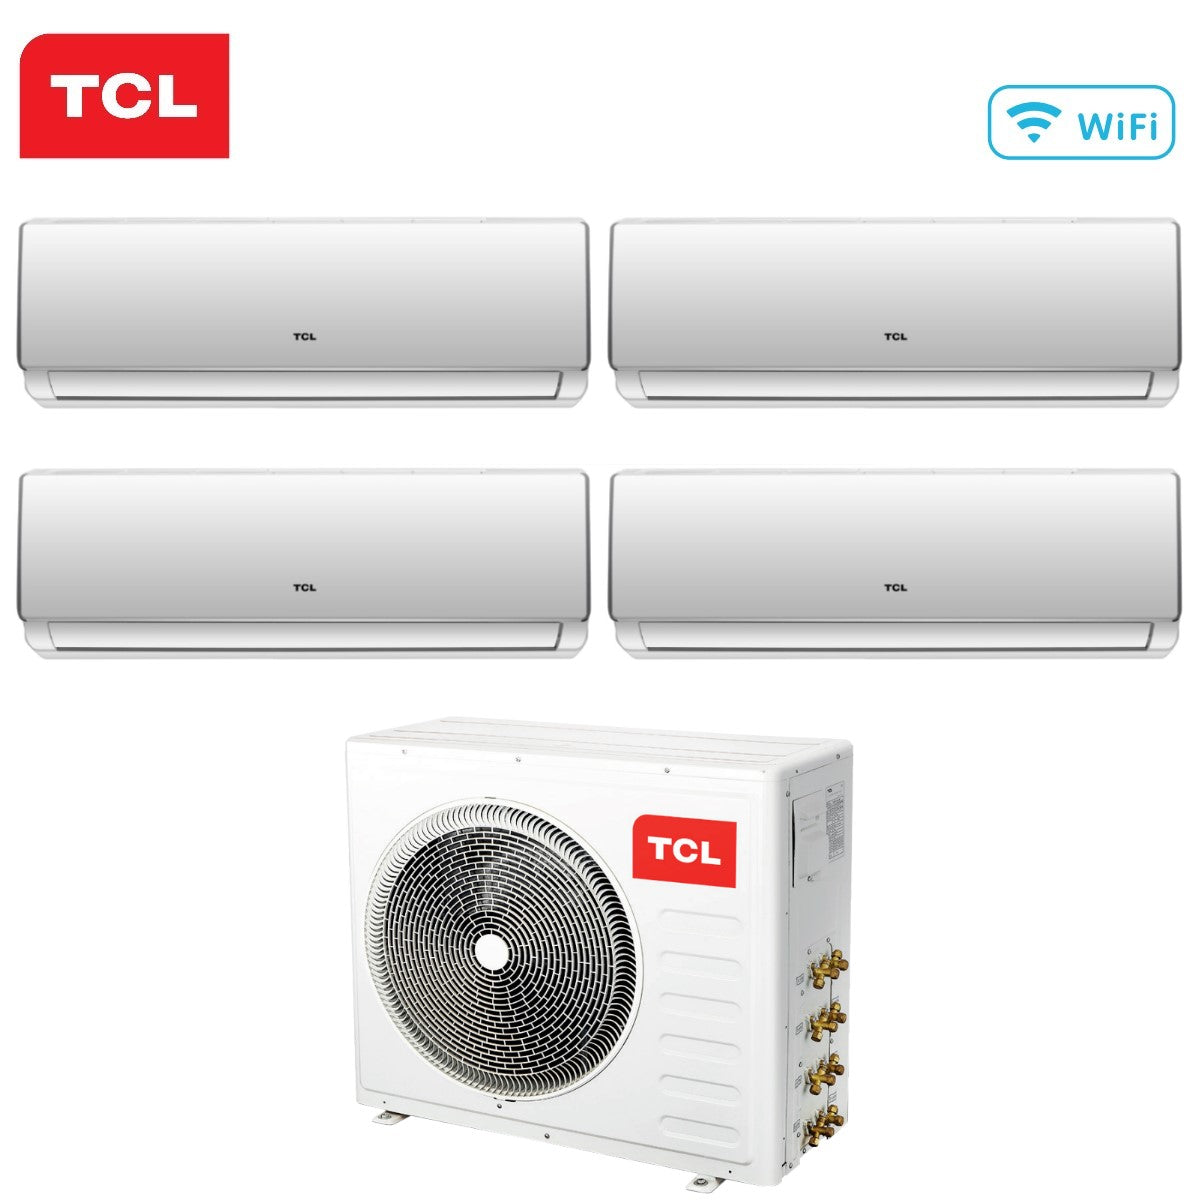 immagine-2-tcl-climatizzatore-condizionatore-tcl-quadri-split-inverter-serie-elite-f2-9999-con-mt3240-r-32-wi-fi-integrato-9000900090009000